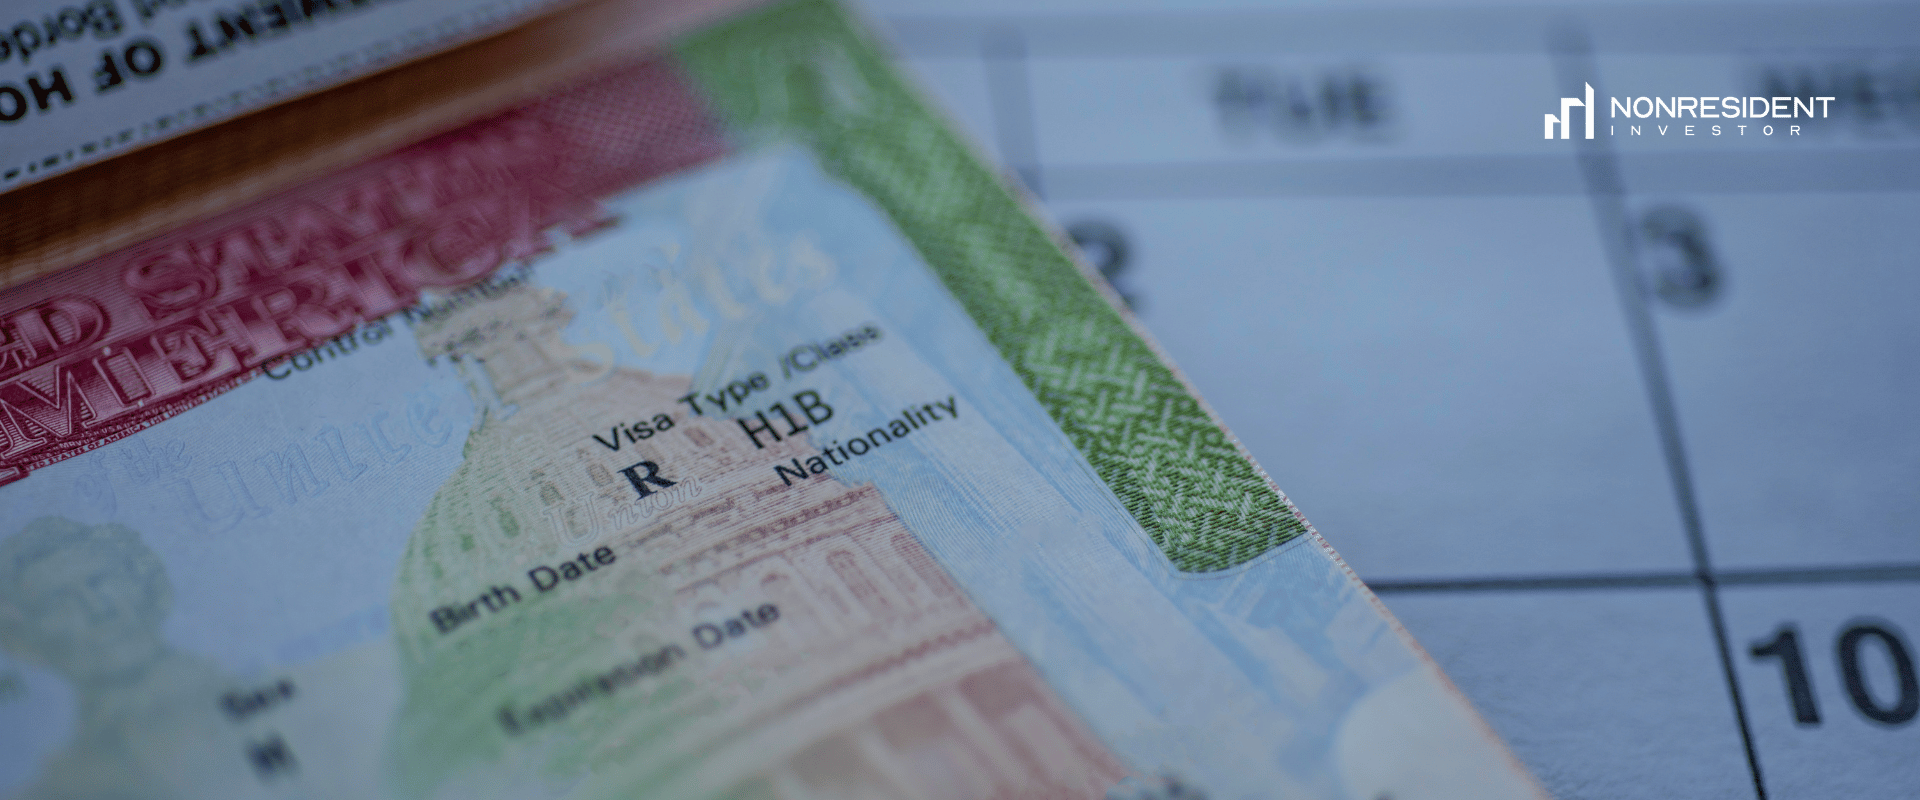 H1B visa in the passport